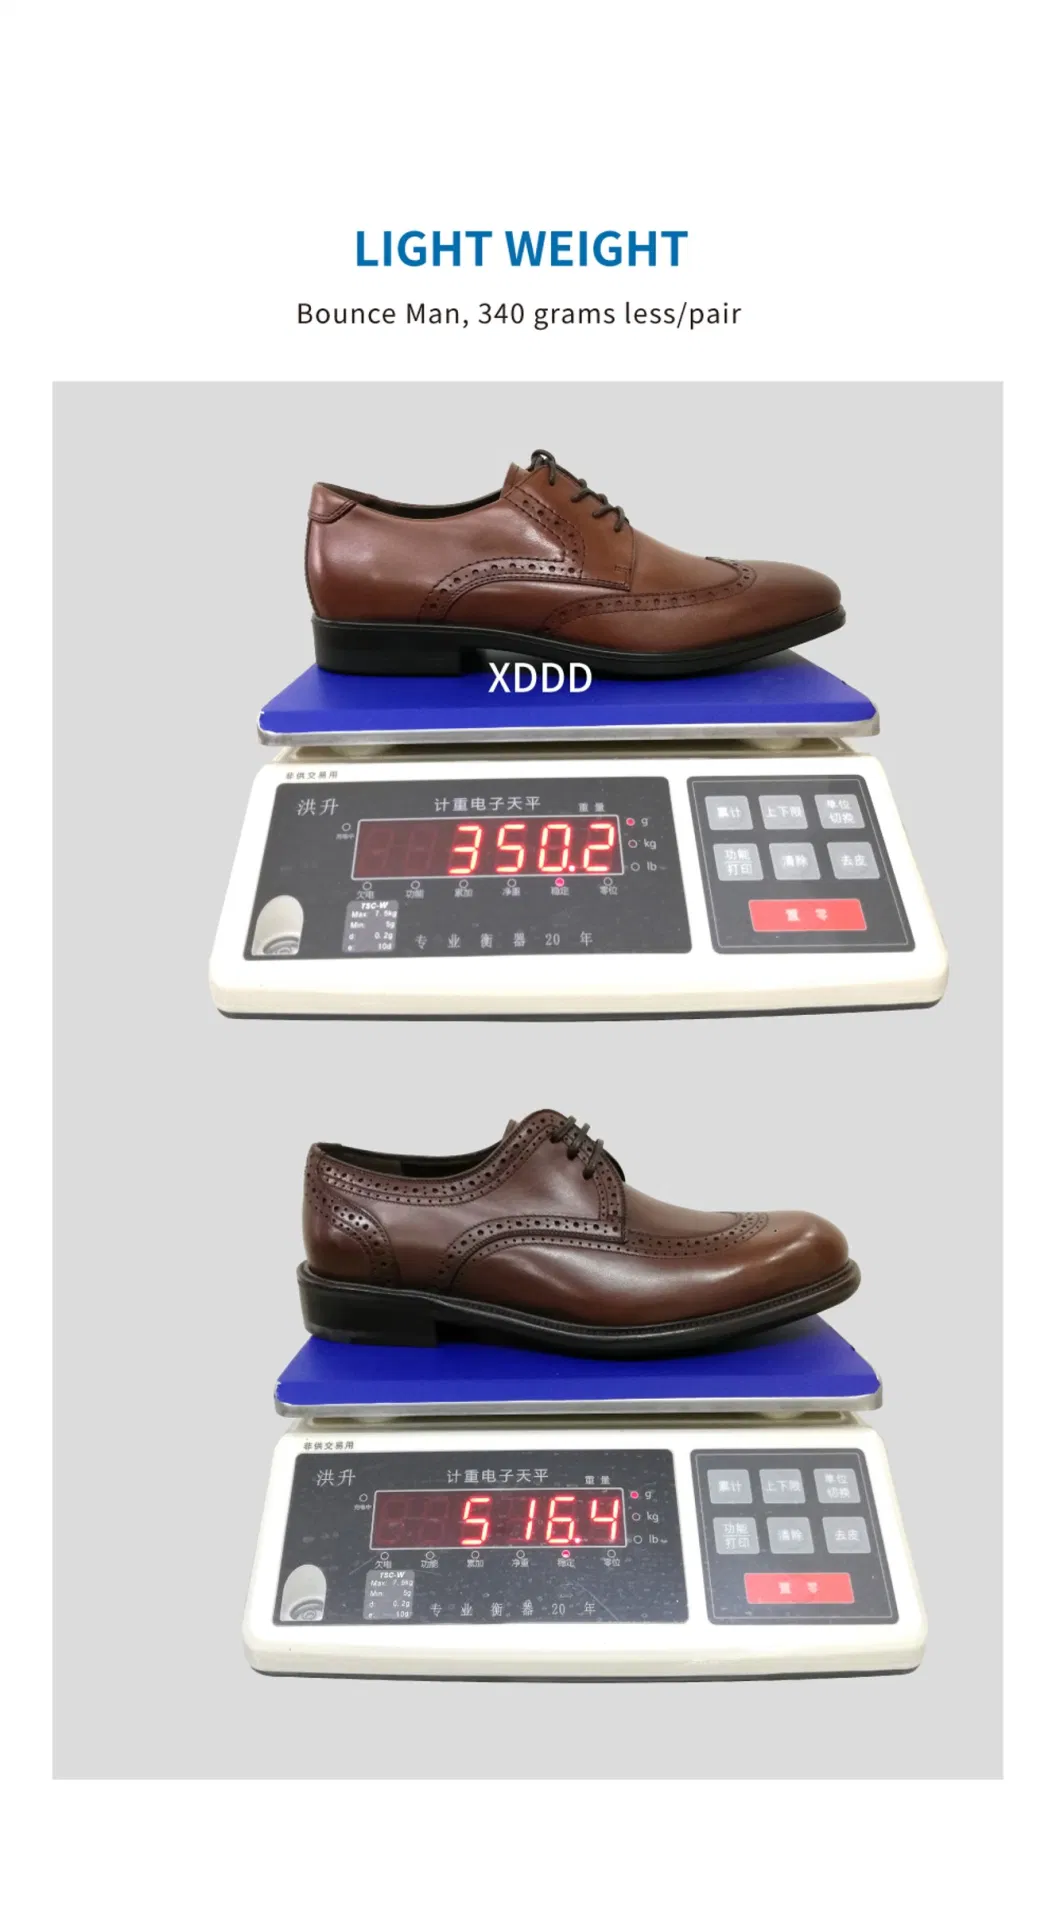 Bounce Man Plain Toe Shoes for Men&prime; S